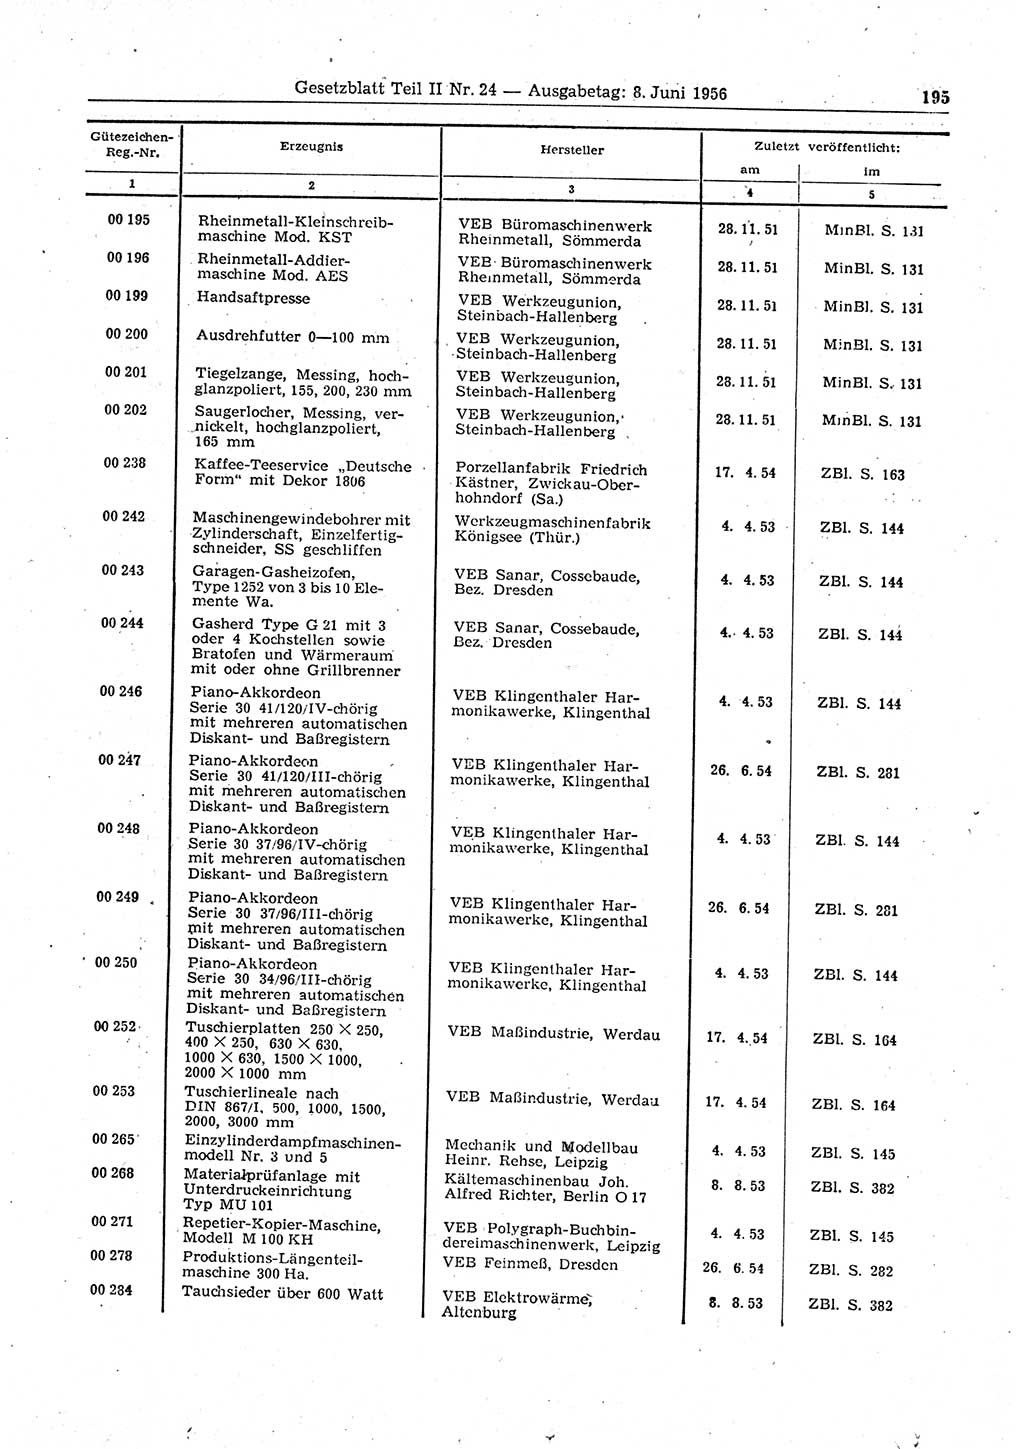 Gesetzblatt (GBl.) der Deutschen Demokratischen Republik (DDR) Teil ⅠⅠ 1956, Seite 195 (GBl. DDR ⅠⅠ 1956, S. 195)